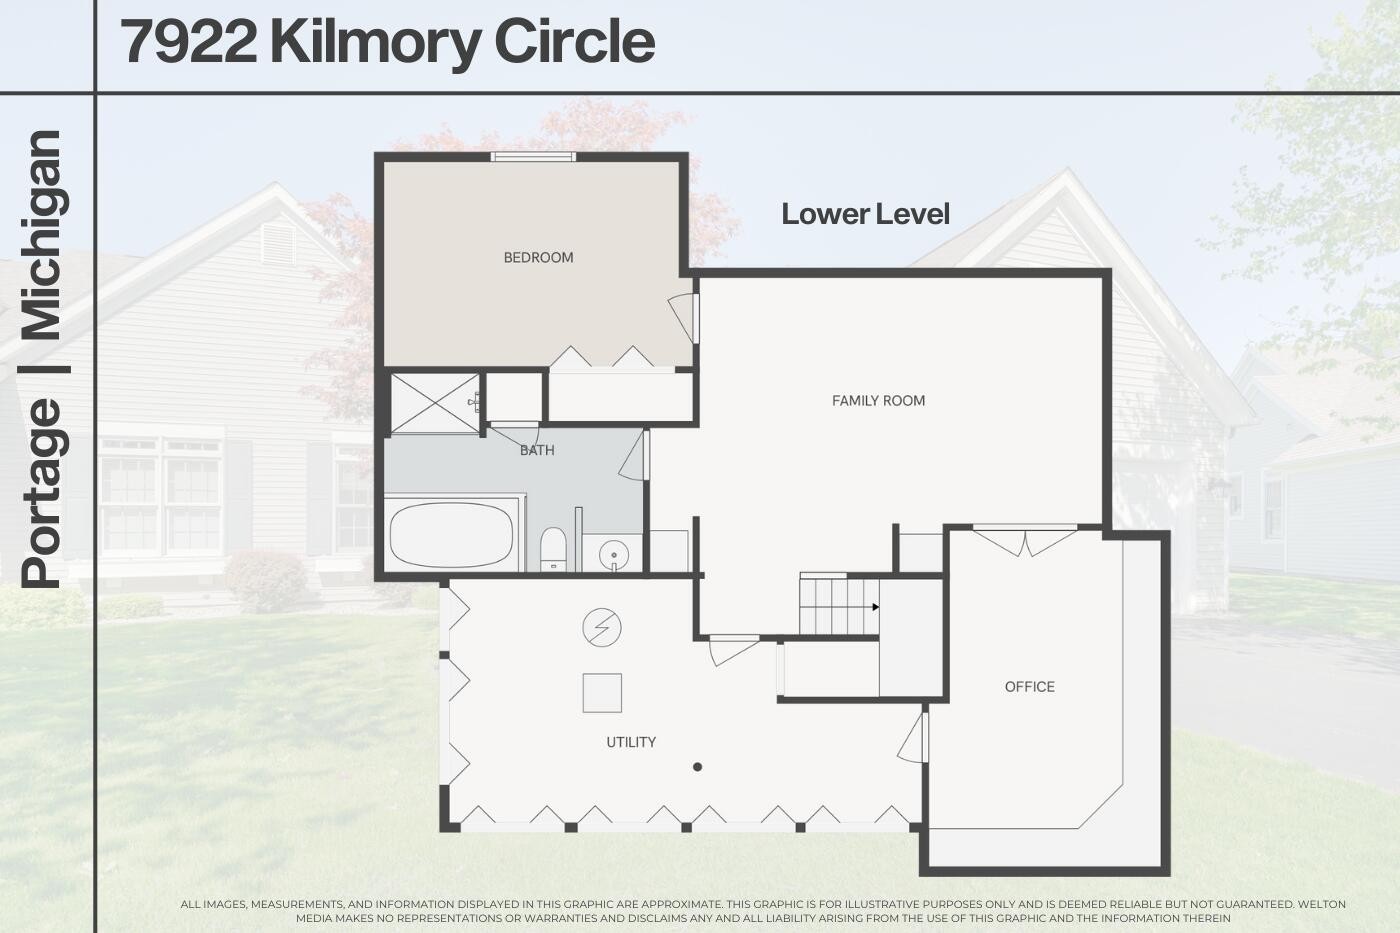 43. 7922 Kilmory Circle